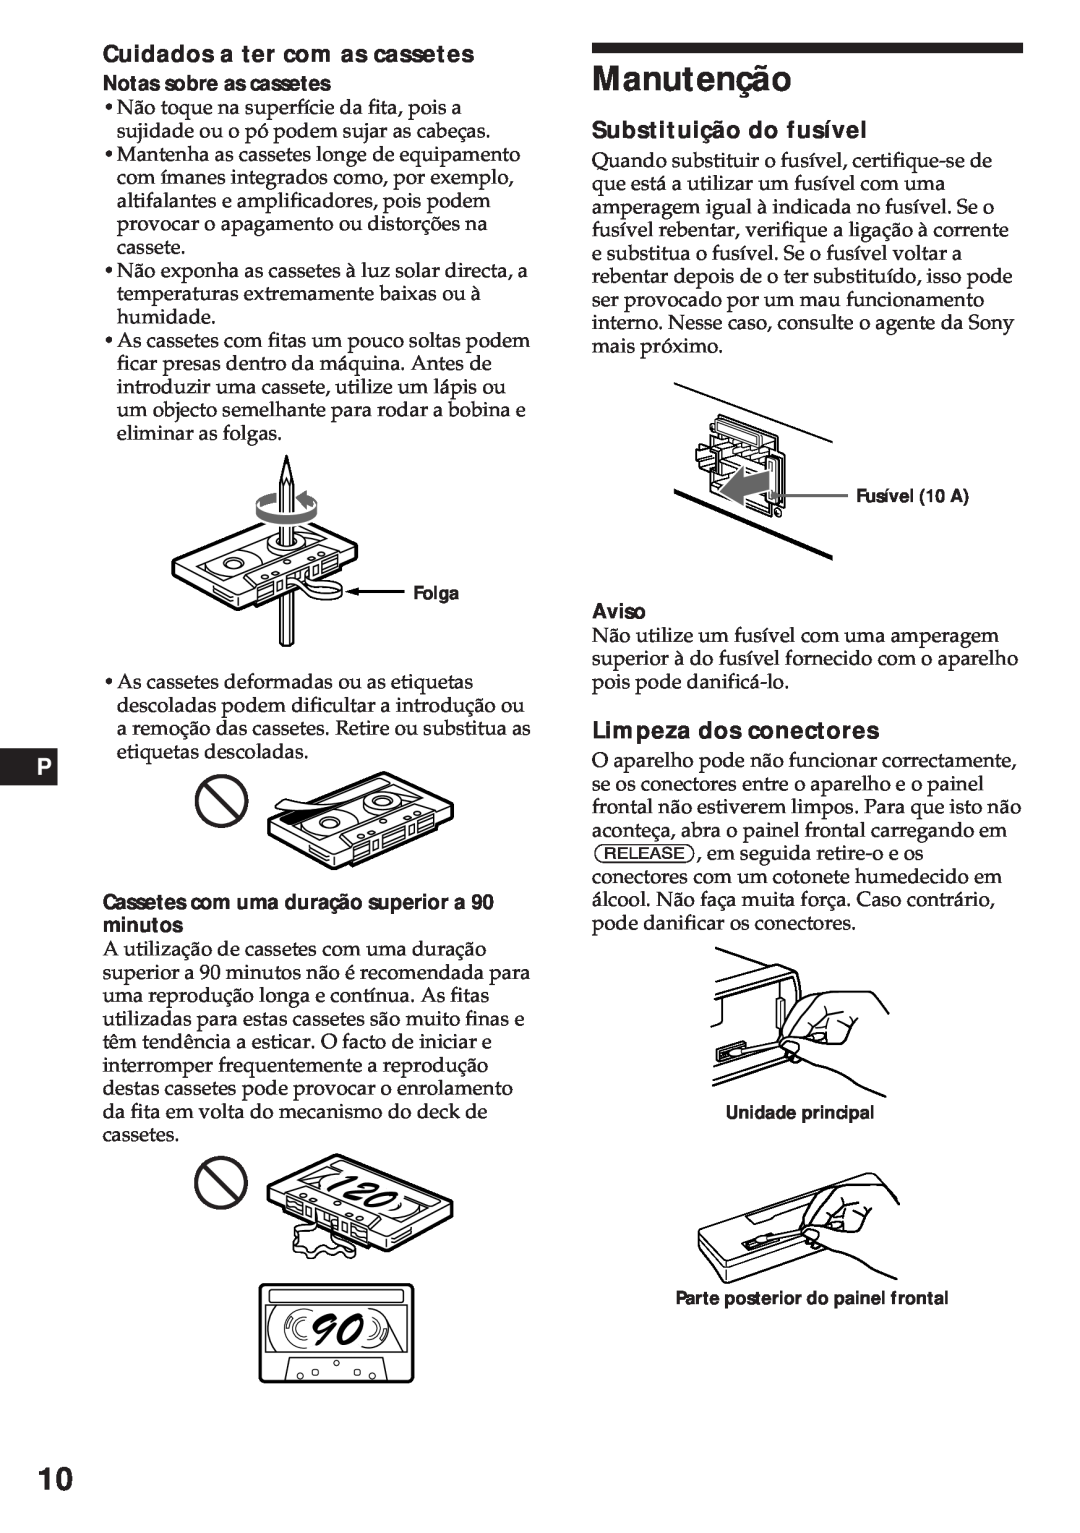 Sony XR-3750 Manutenção, Cuidados a ter com as cassetes, Substituição do fusível, Limpeza dos conectores, Aviso 